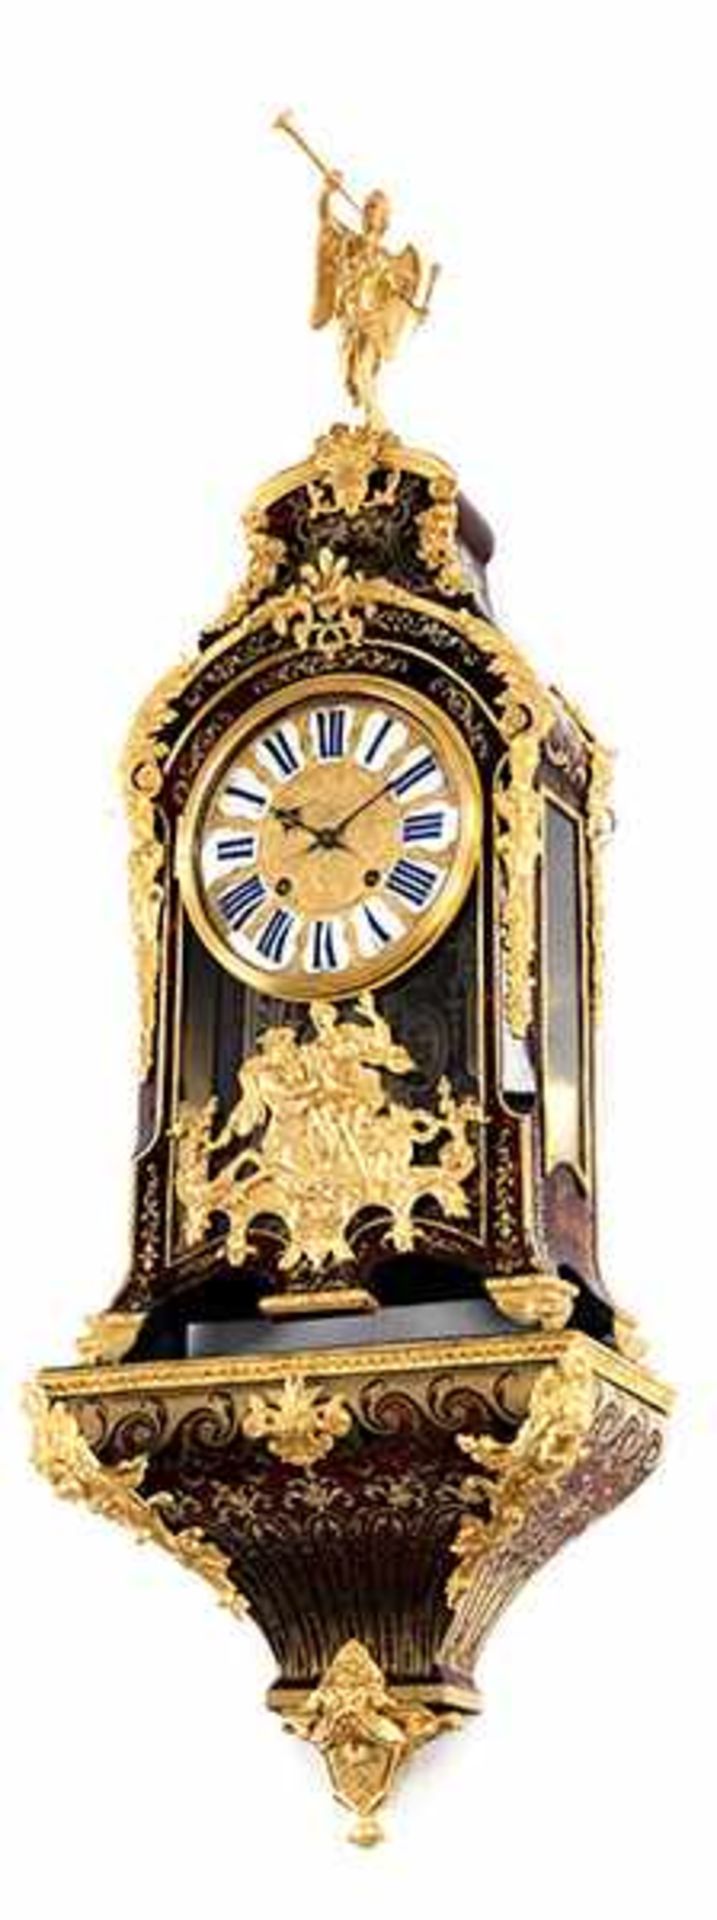 Louis XIV-Konsoluhr Höhe der Uhr: 66 cm. Höhe inkl. Konsole und Aufsatz: ca. 142 cm. Rückwärtig